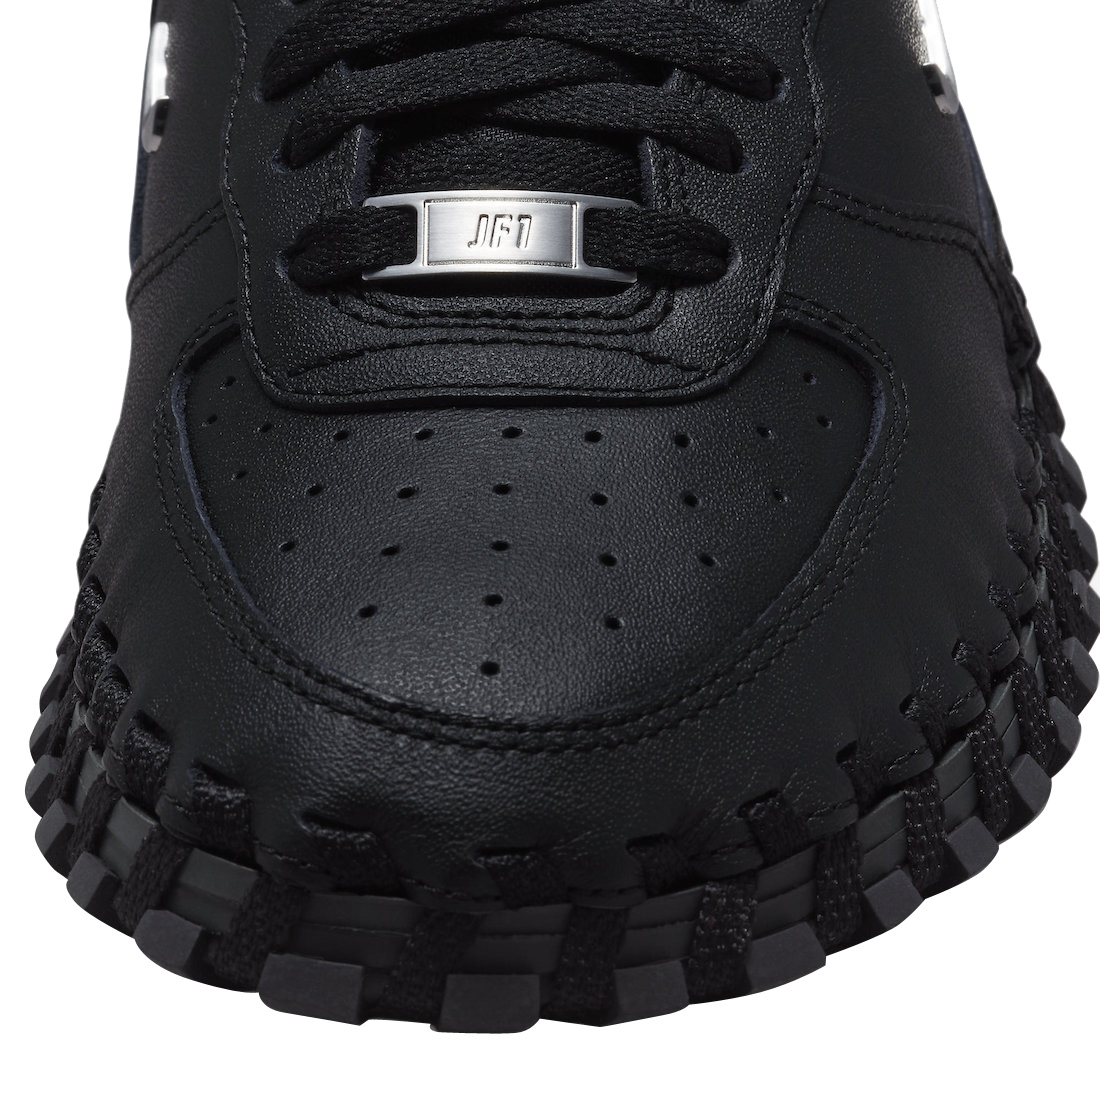 Jacquemus x Nike WMNS J Force 1 Low LX Black DR0424-001